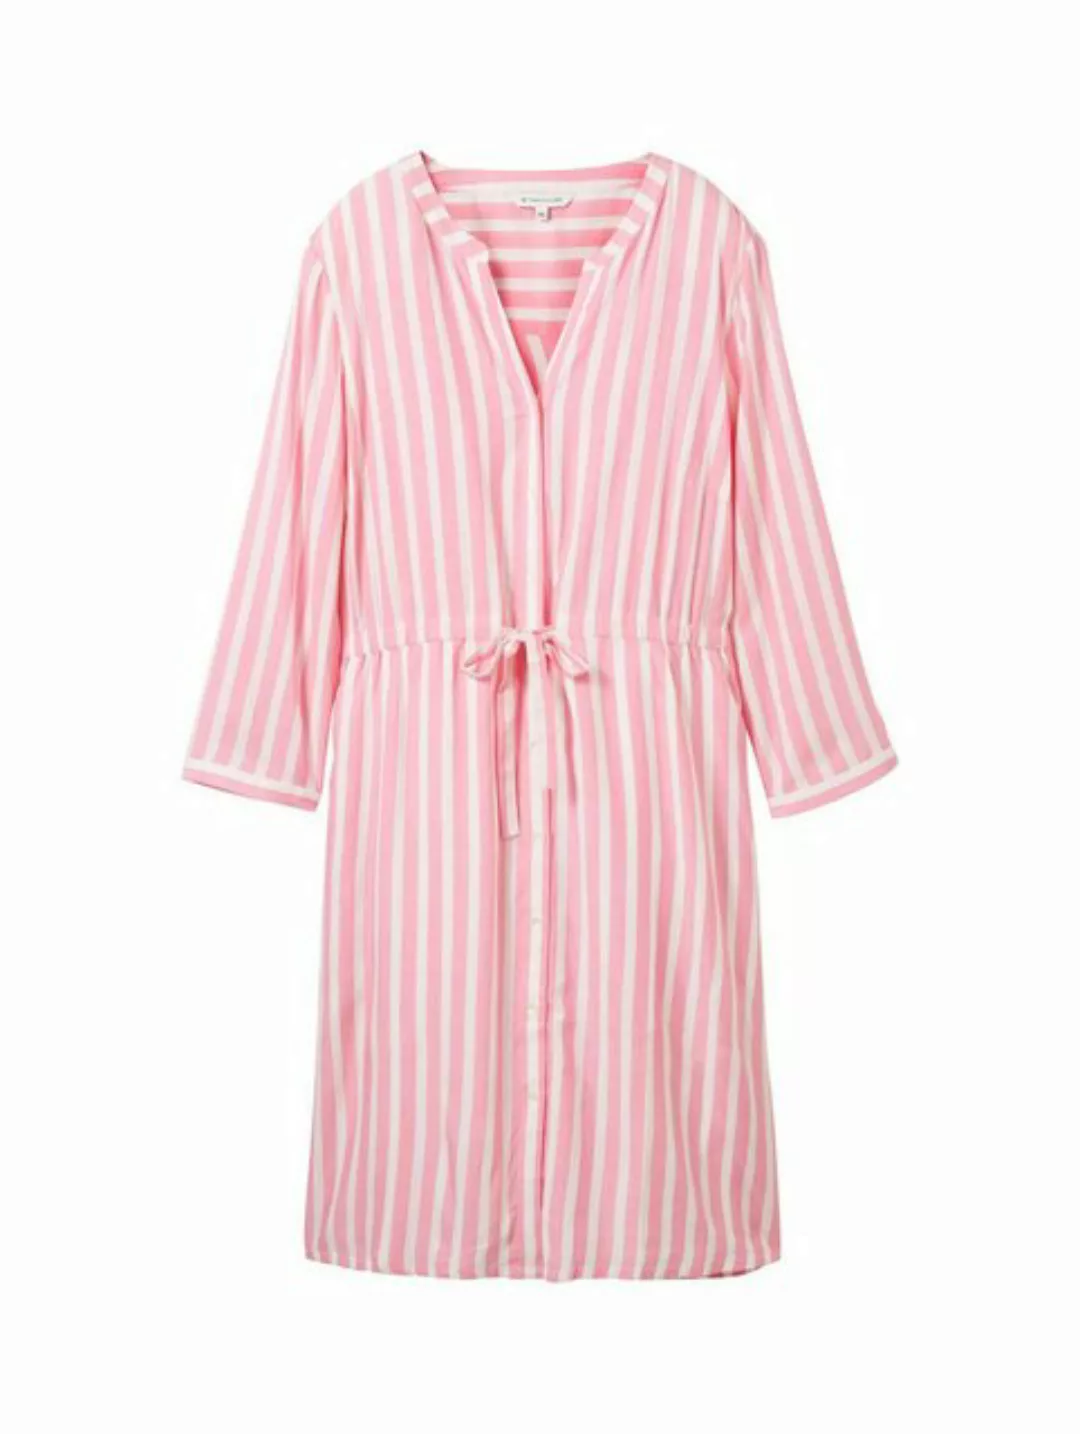 TOM TAILOR Sommerkleid striped dress, pink offwhite stripe günstig online kaufen